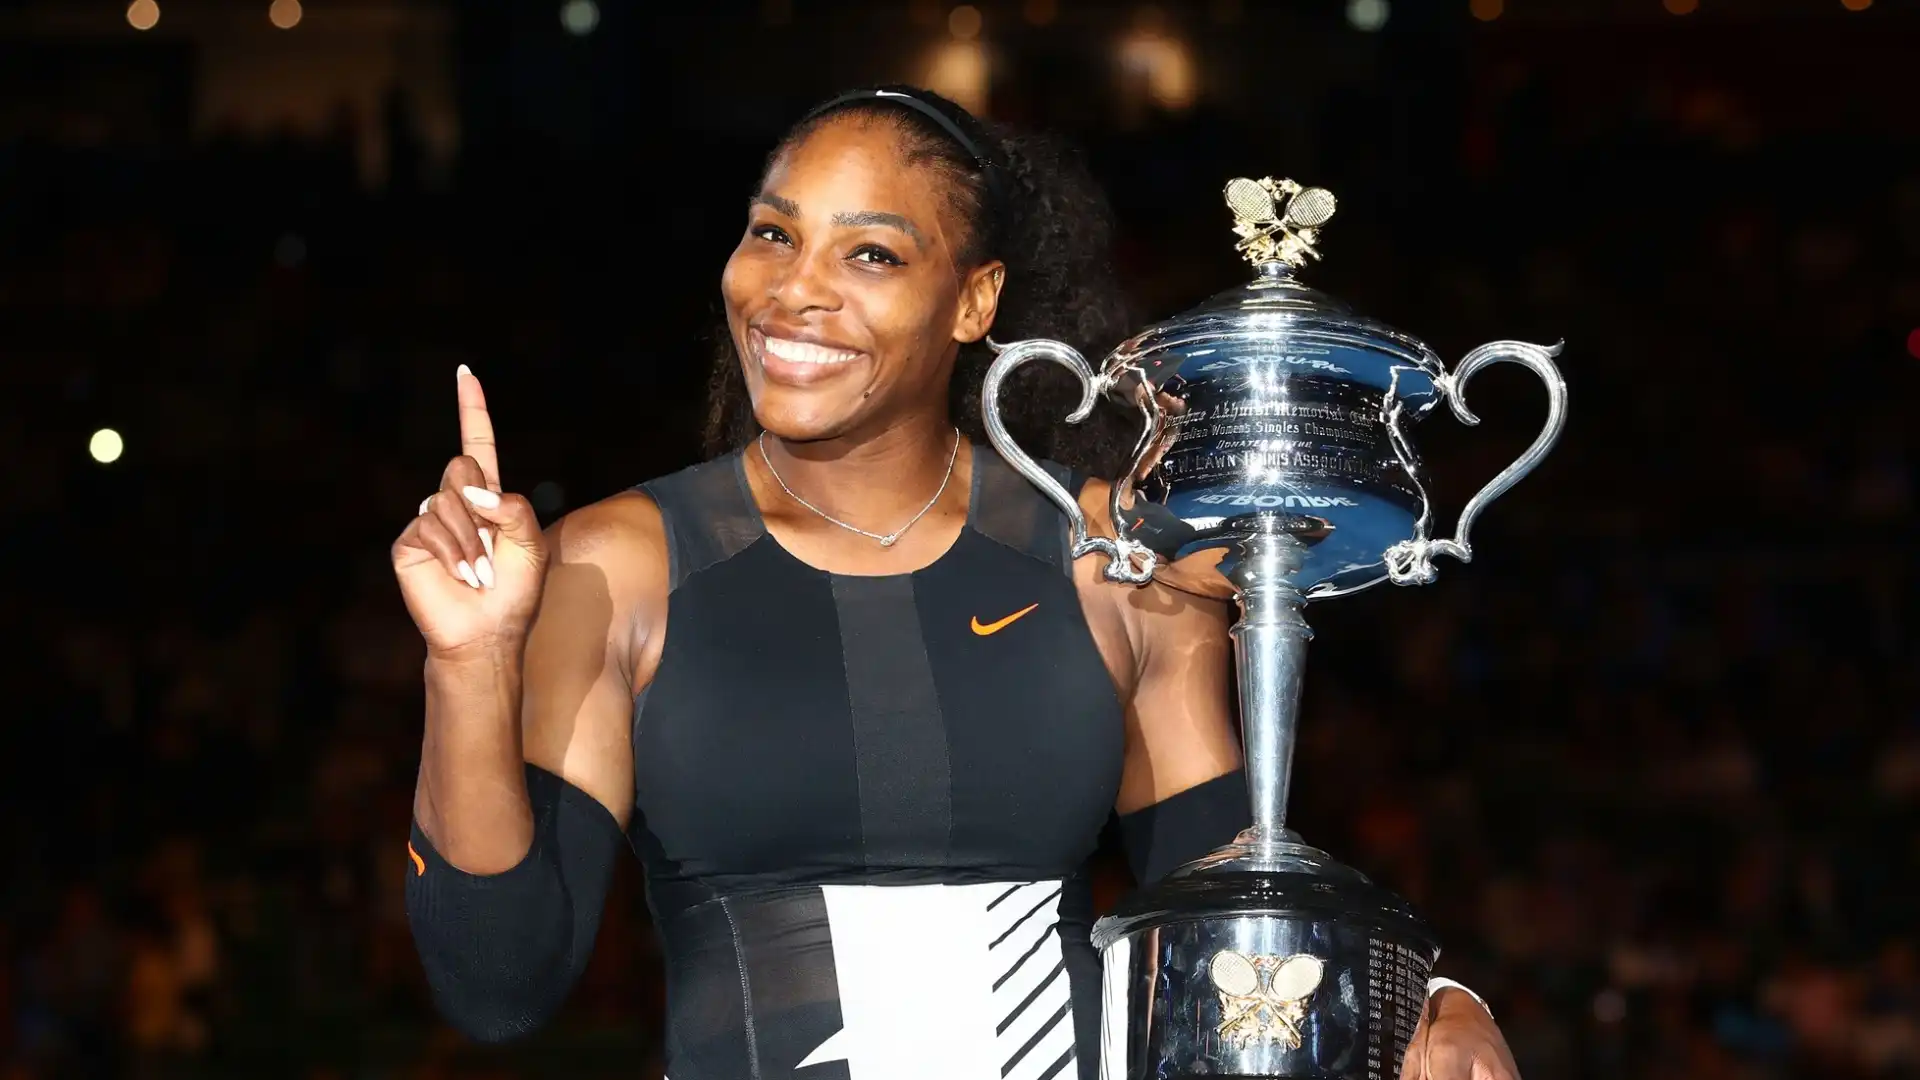 Serena Williams: patrimonio stimato 290 milioni di dollari. E' una delle tenniste più vittoriose della storia